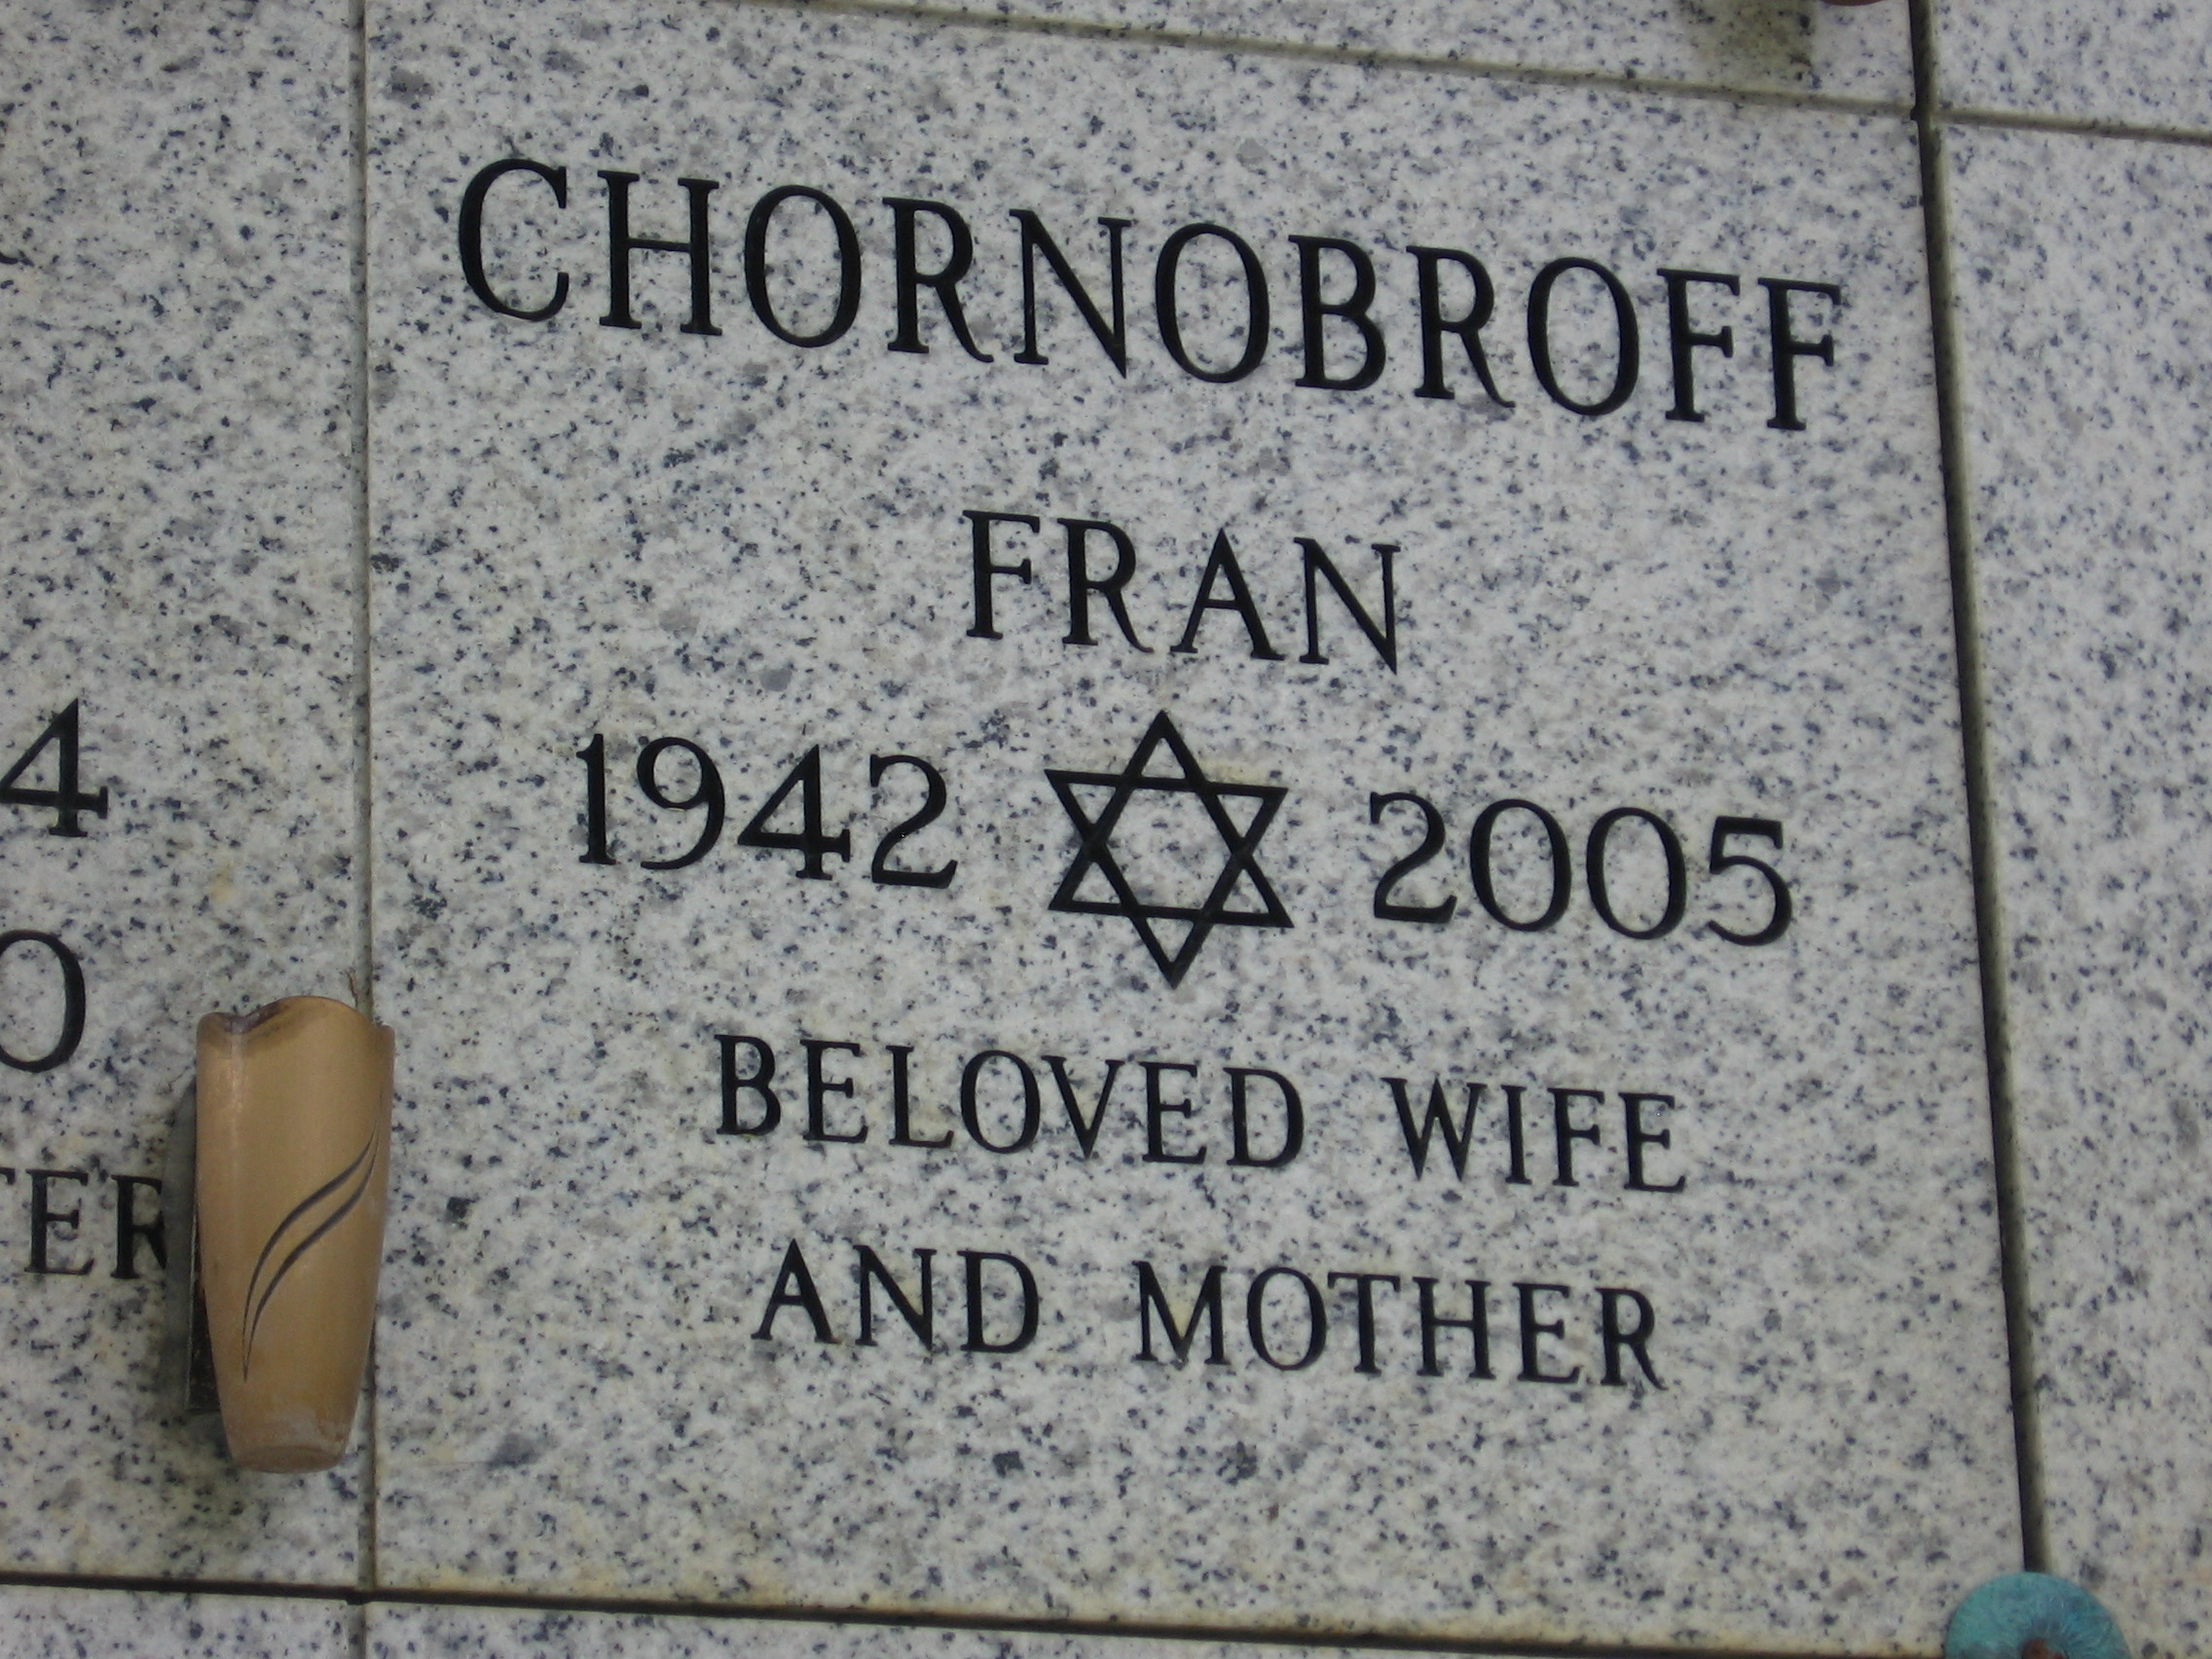 Fran Chornobroff